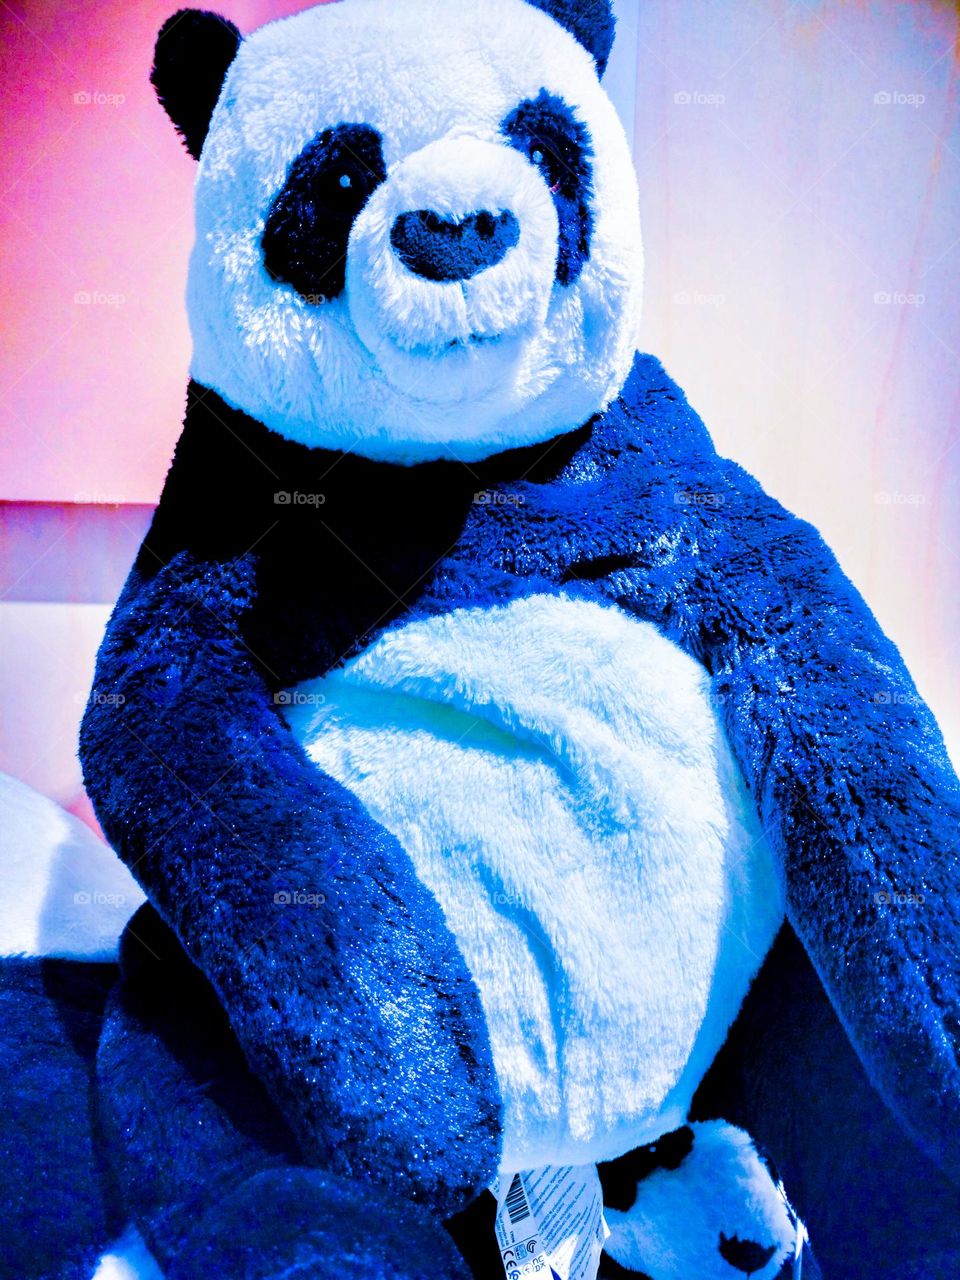 kind big panda 🐼